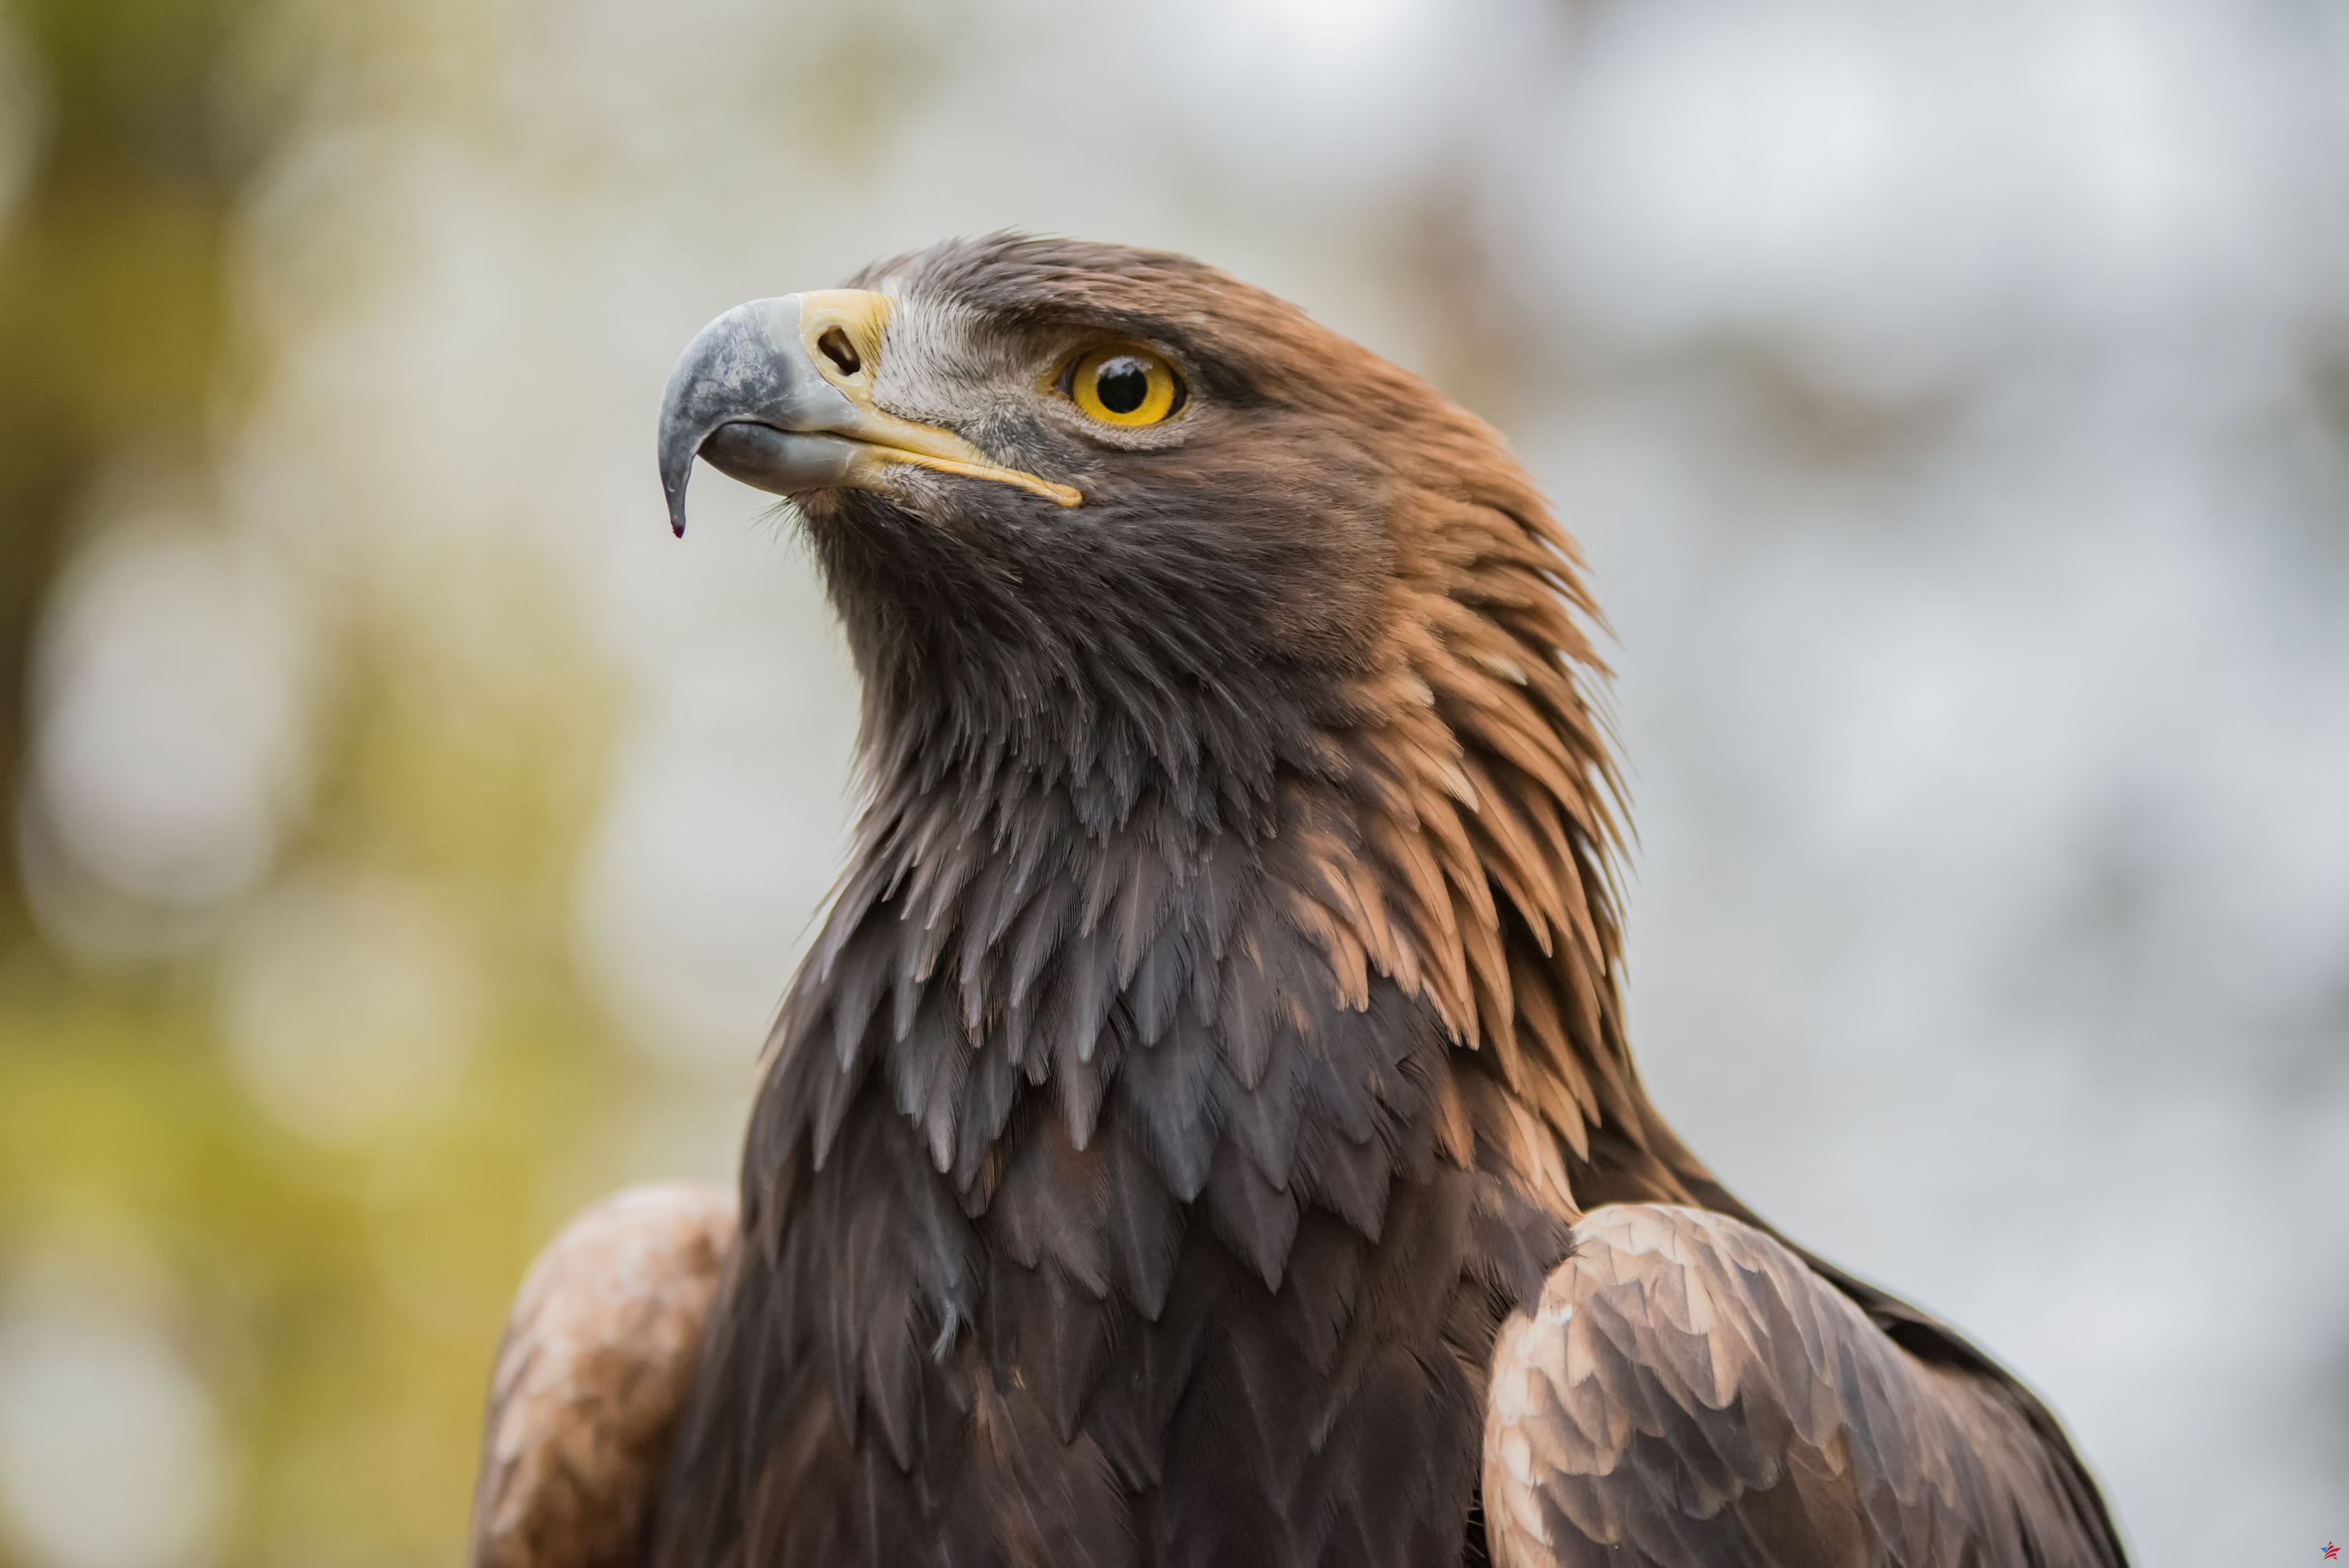 Saboya: un parapente atacado en pleno vuelo durante varios minutos por un águila real